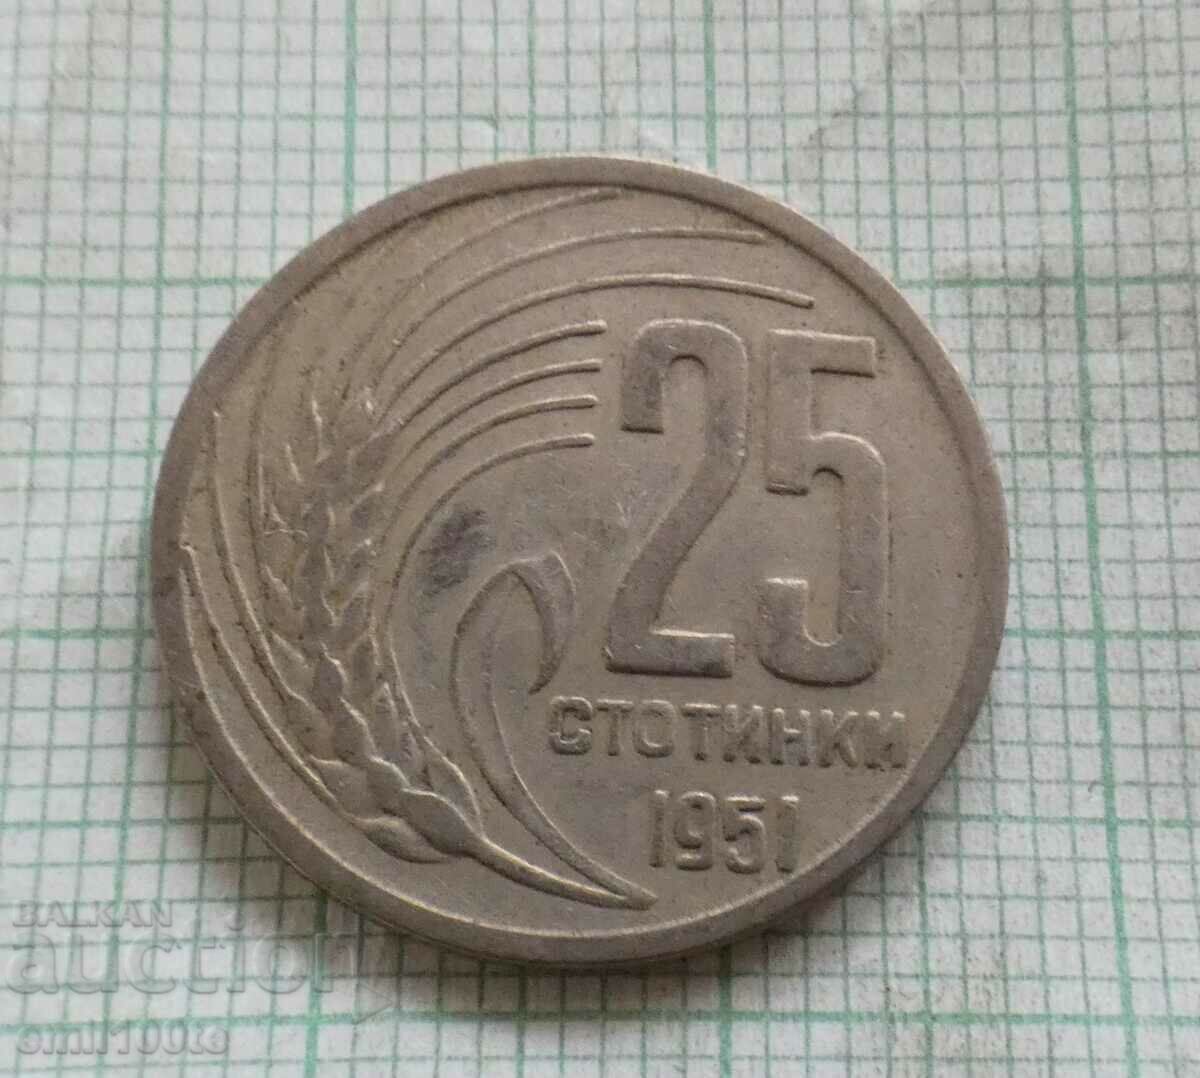 25 σεντς 1951